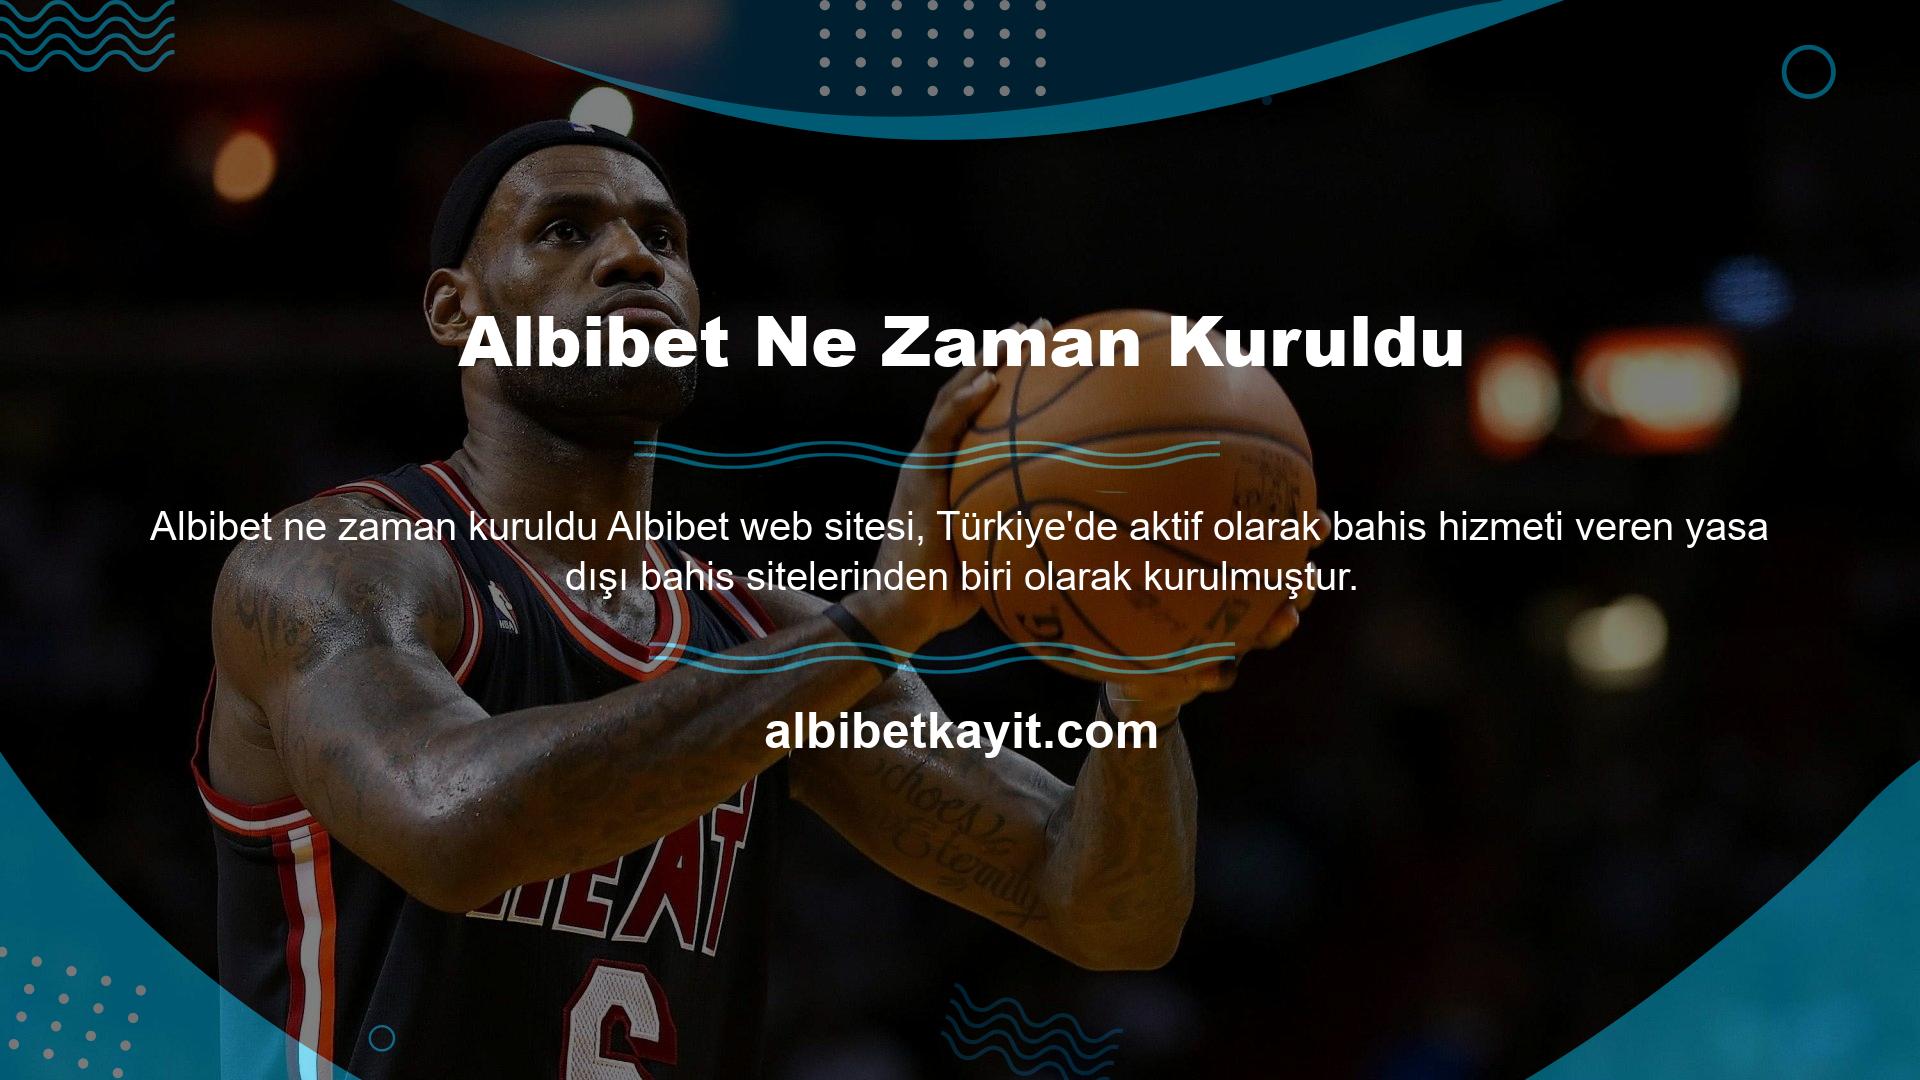 Albibet "Türkiye'ye Destek" platformu olarak en son yeni giriş adresini bu sayfada paylaşıyoruz